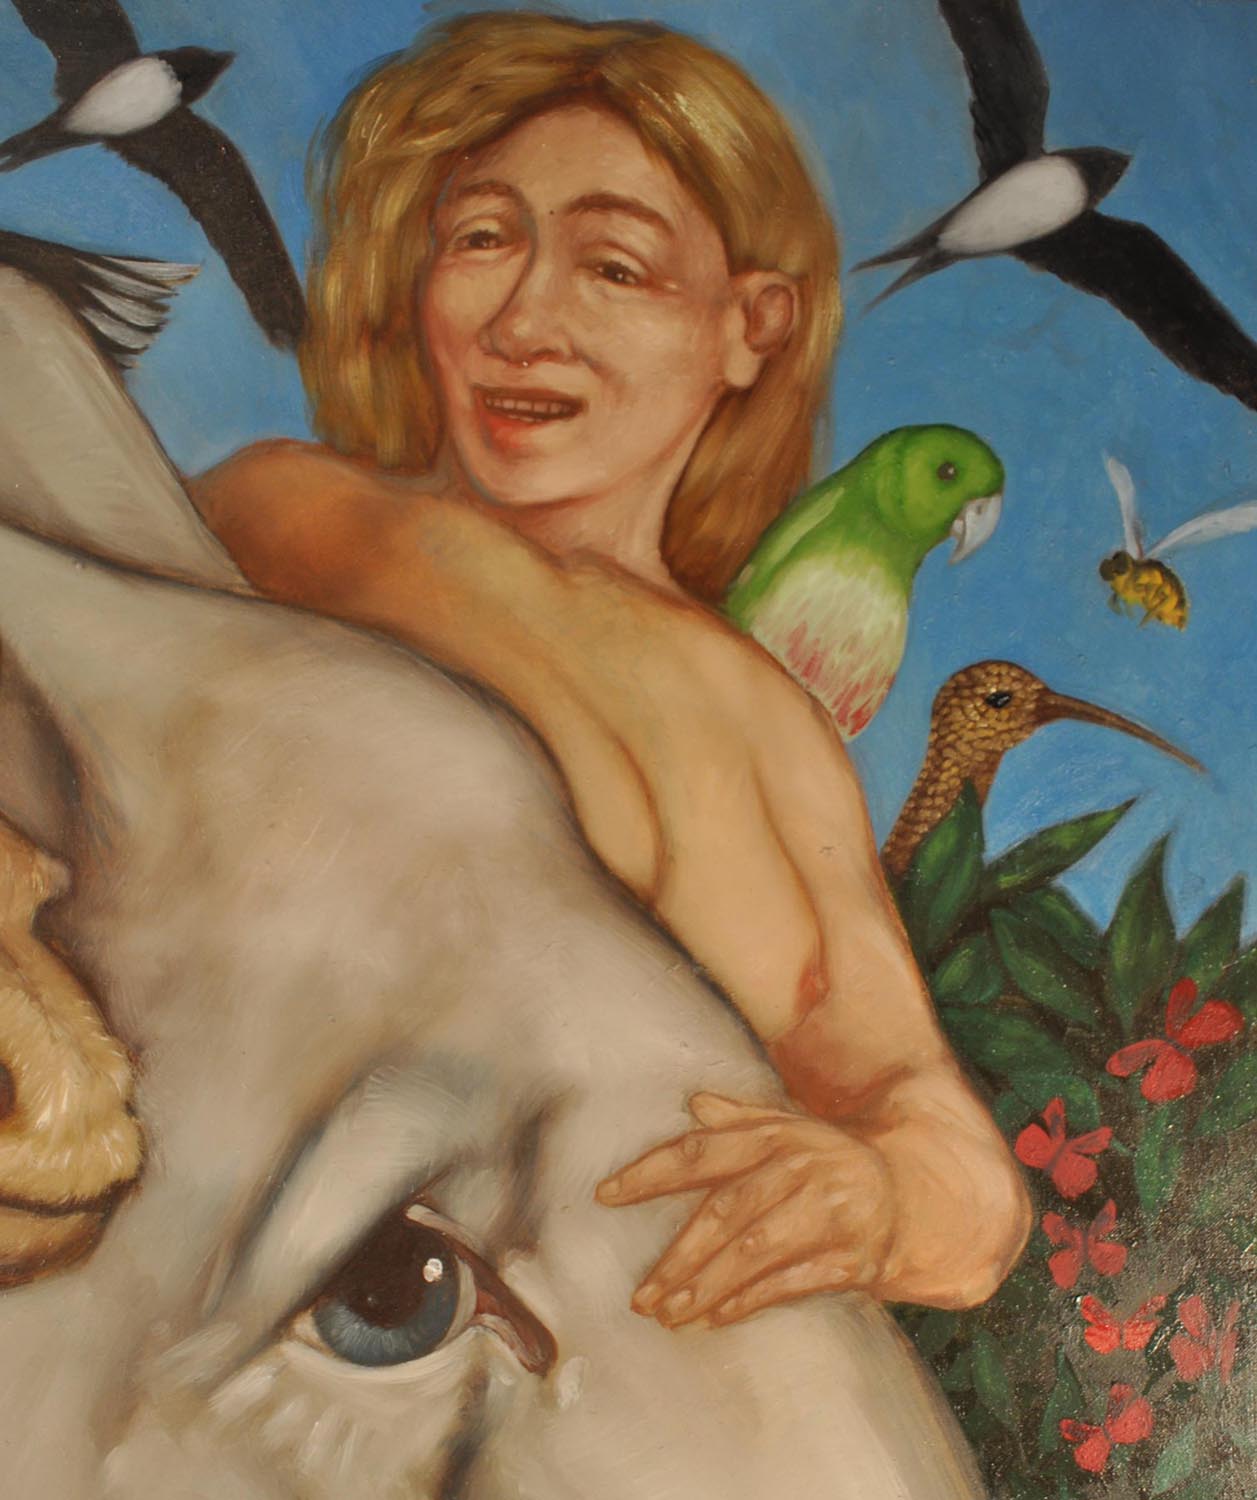 Détail de la femme, le visage défromé par le rire. Un perroquet vert sur l'épaule, des martinets et un frelon dans le ciel. Un sein rond et rose dépasse du front de l'éléphant sur lequel elle pose la main.